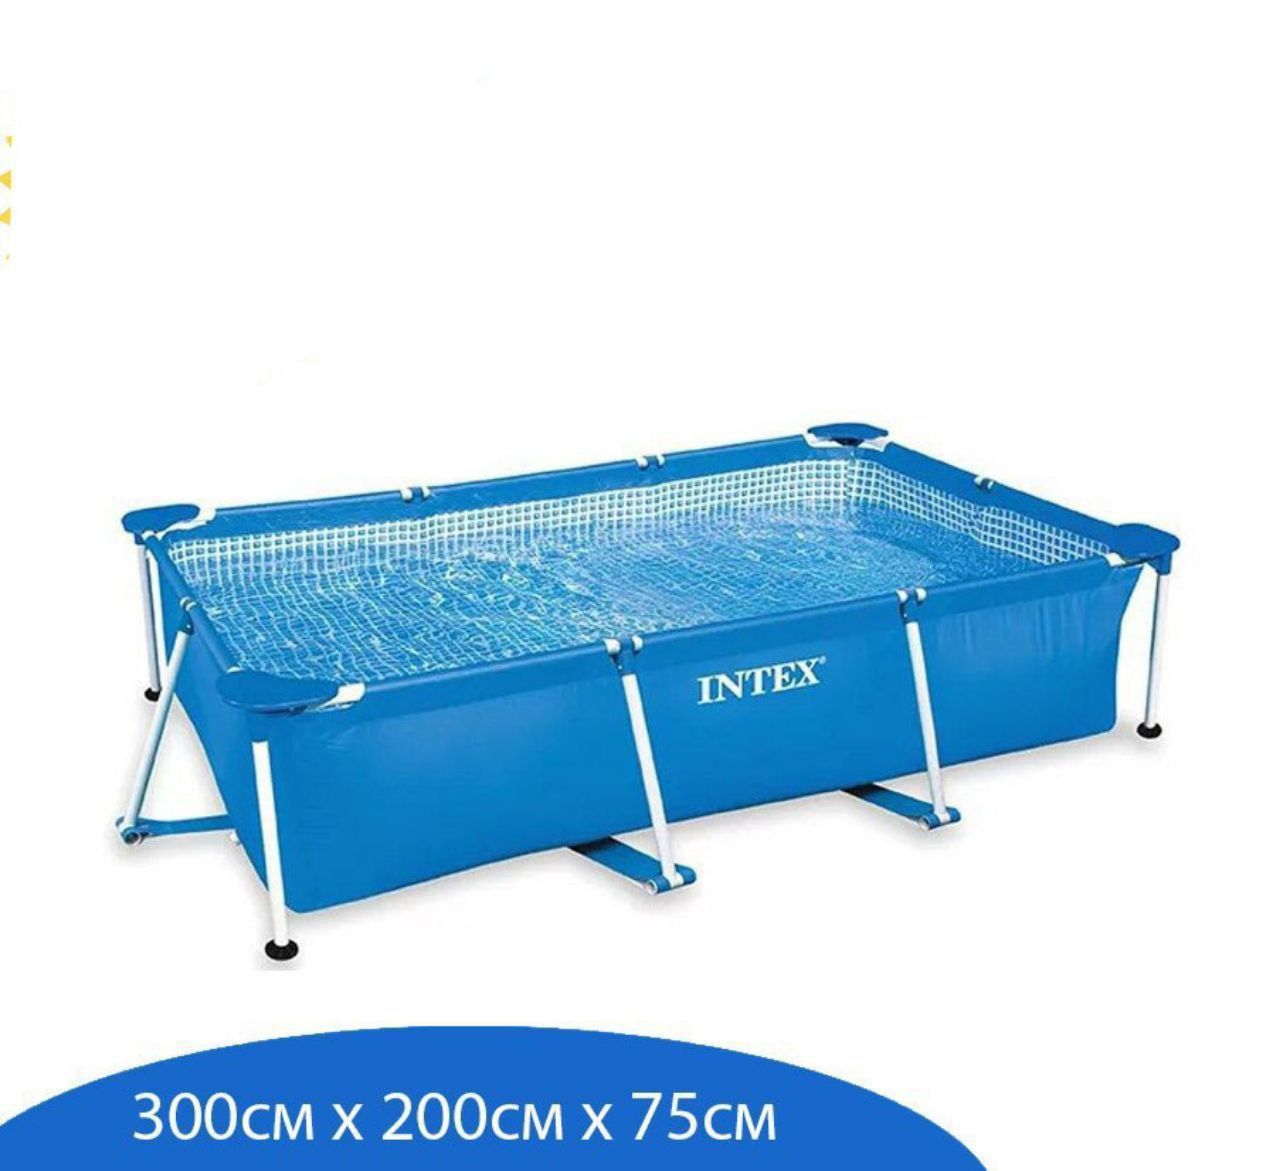 Intex 3х2х75см каркасный бассейн оригинал качественный